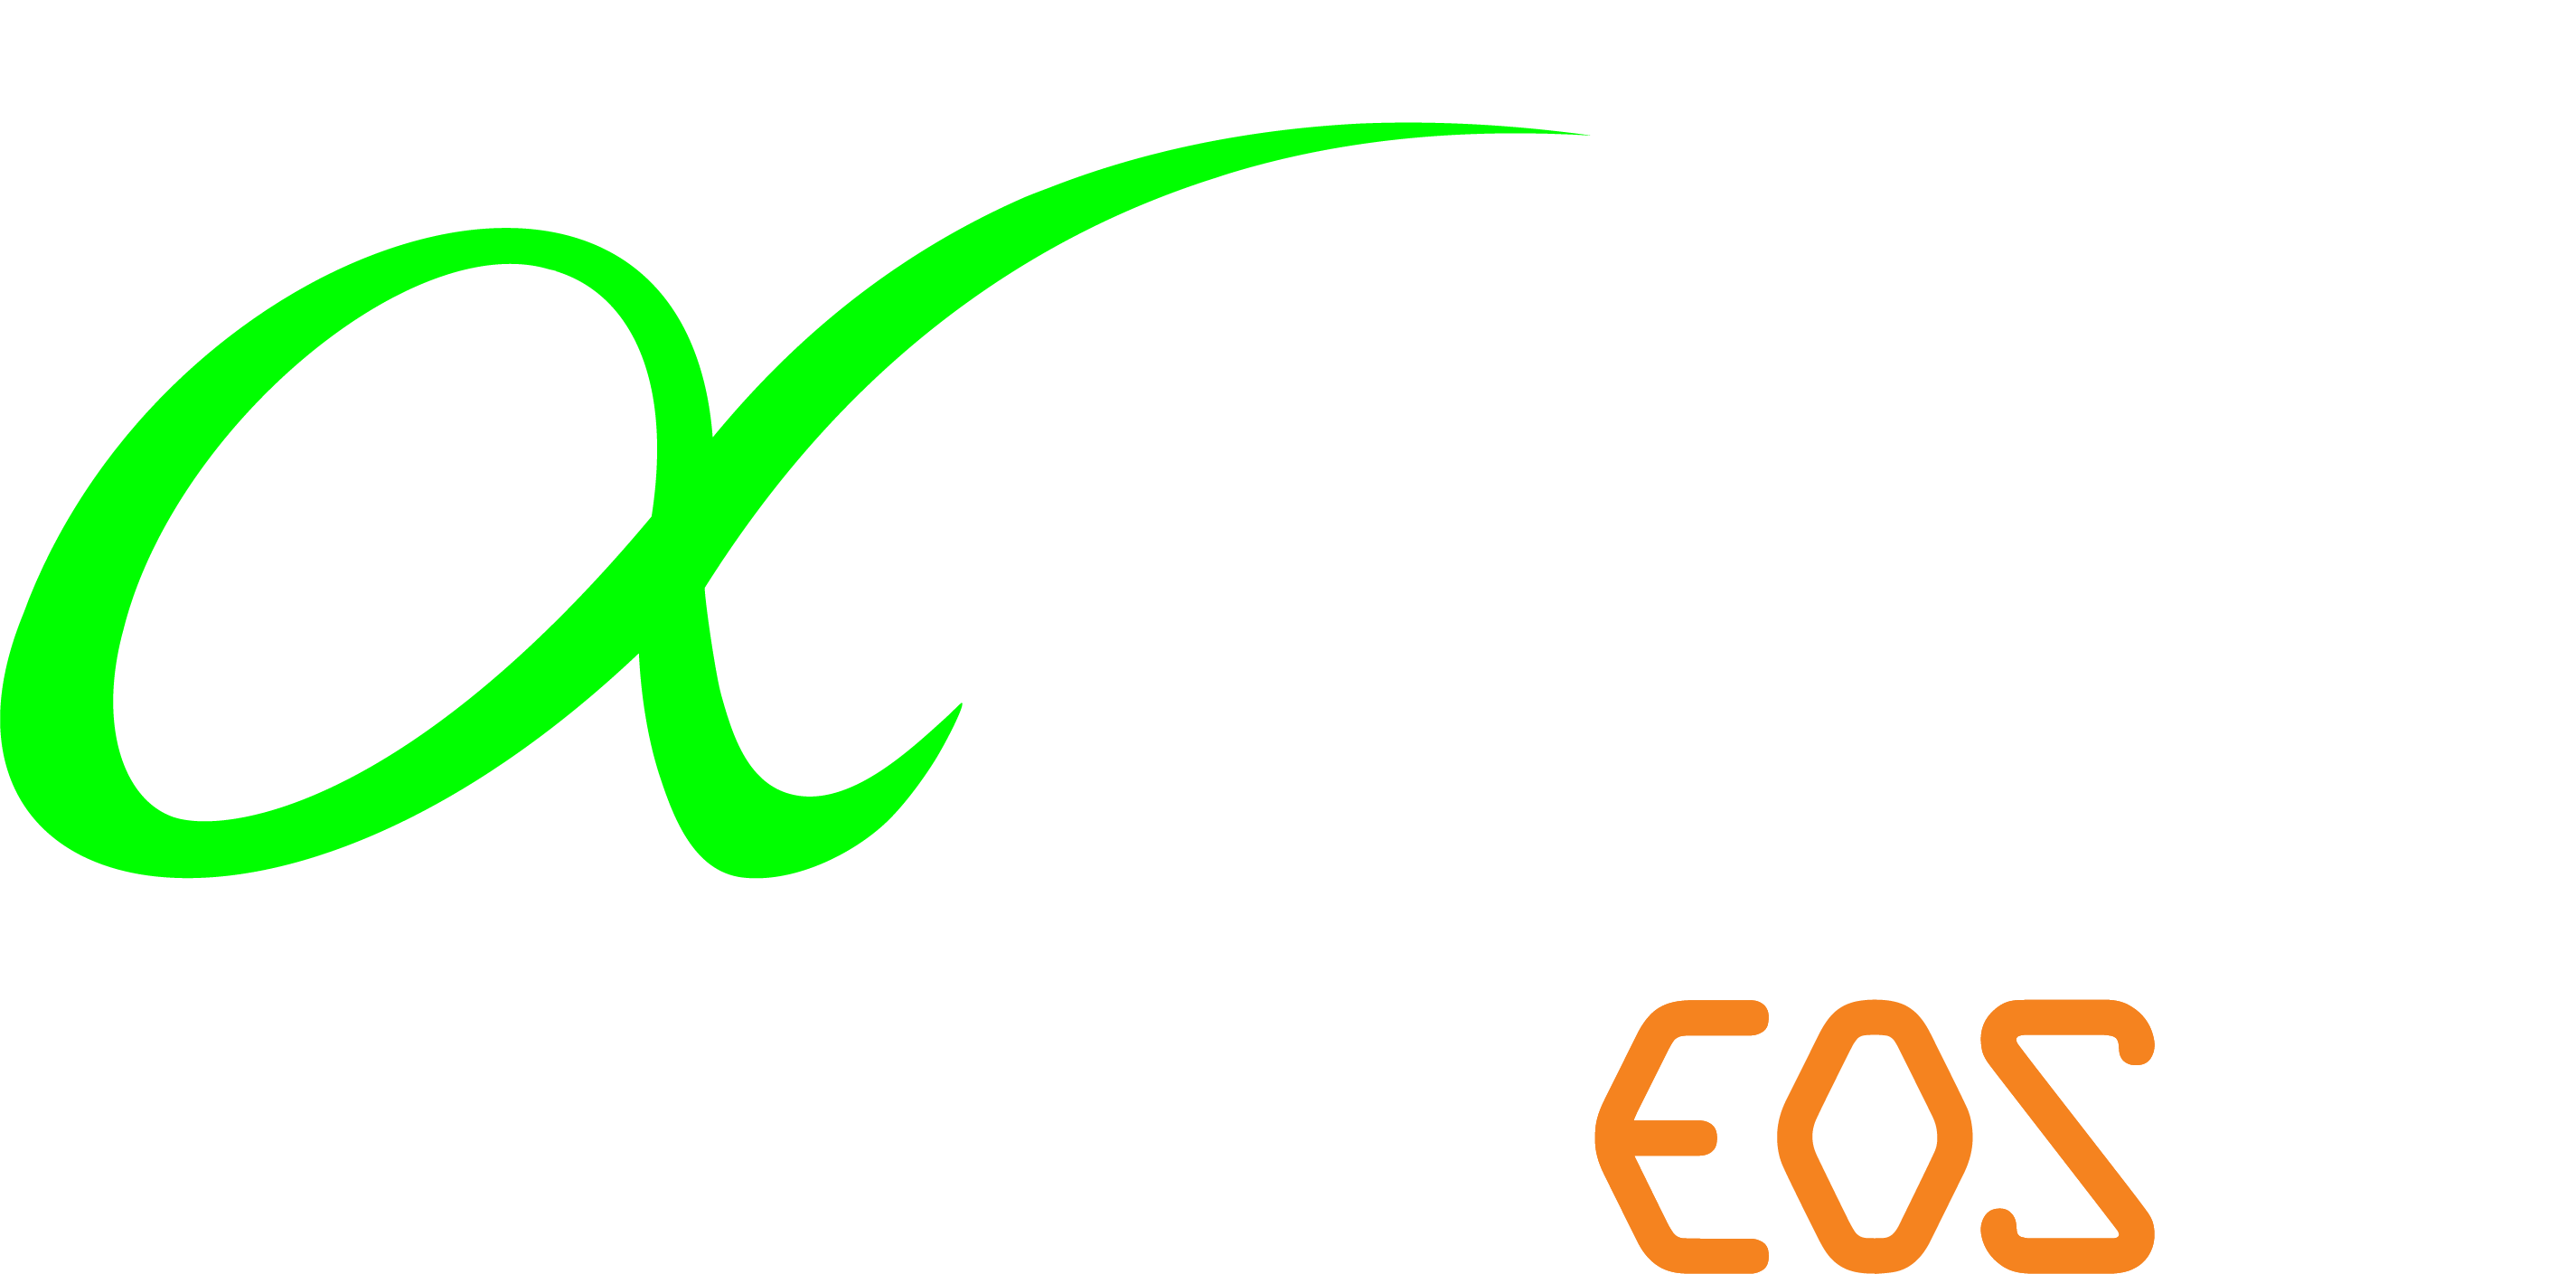 ATEC-EOS_Logo_KO